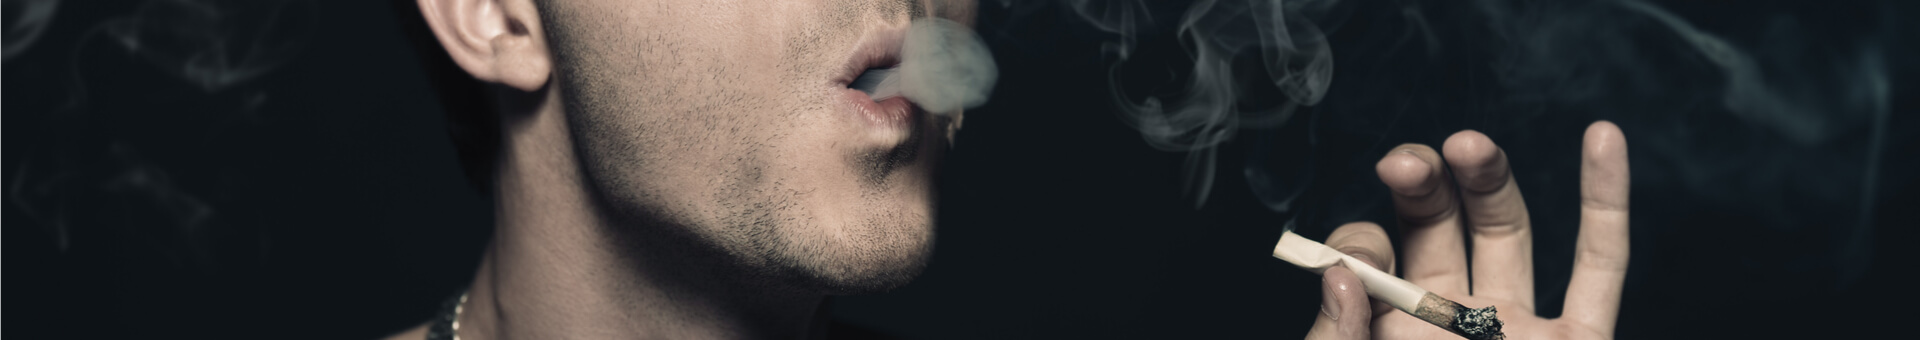 brutal man blowing smoke rigns